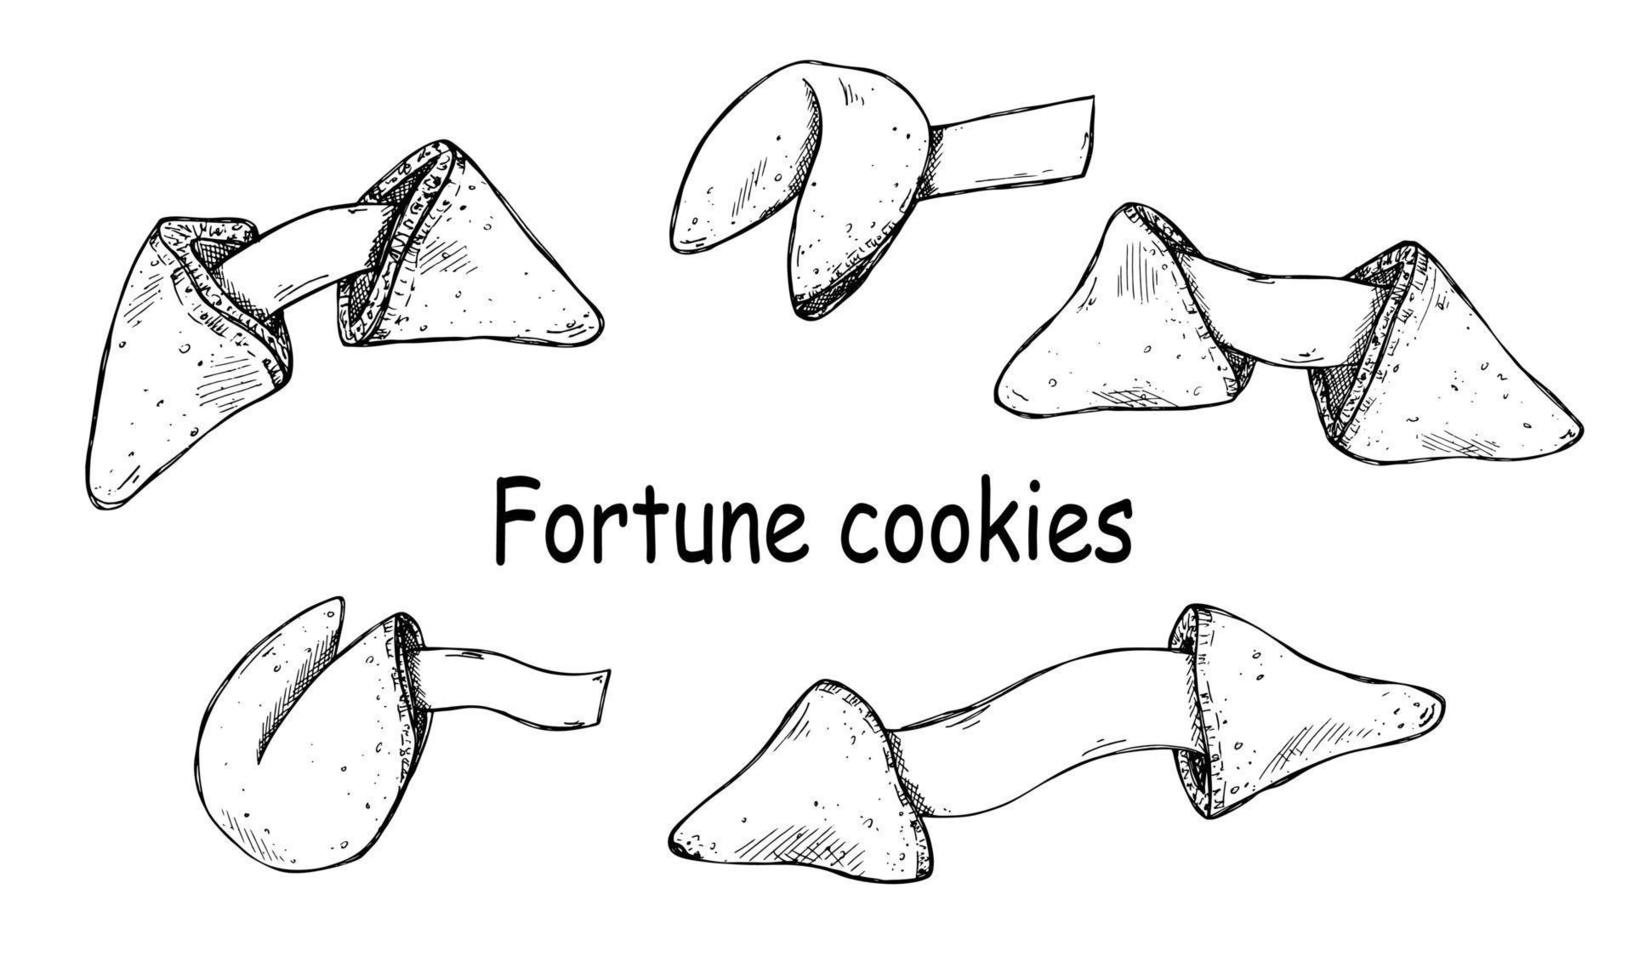 Vektor-Set von handgezeichneten chinesischen Glückskeksen. Lebensmittelillustration. knuspriger Keks mit einem leeren Blatt Papier darin. für Print, Web, Design, Dekor, Logo. vektor